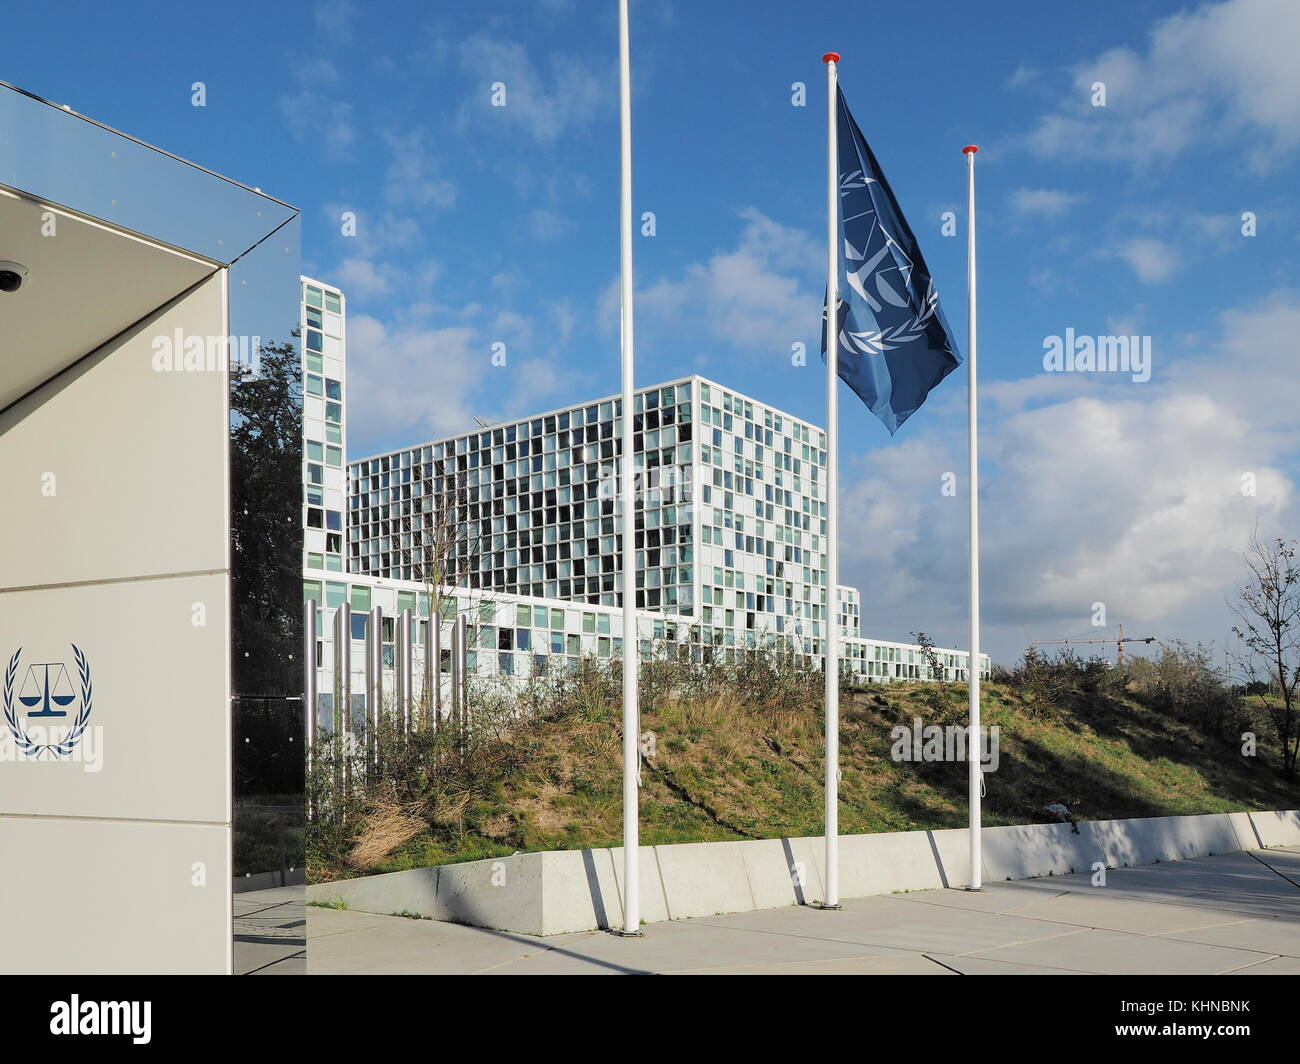 Logotipo de la corte penal internacional fotografías e imágenes de alta  resolución - Alamy